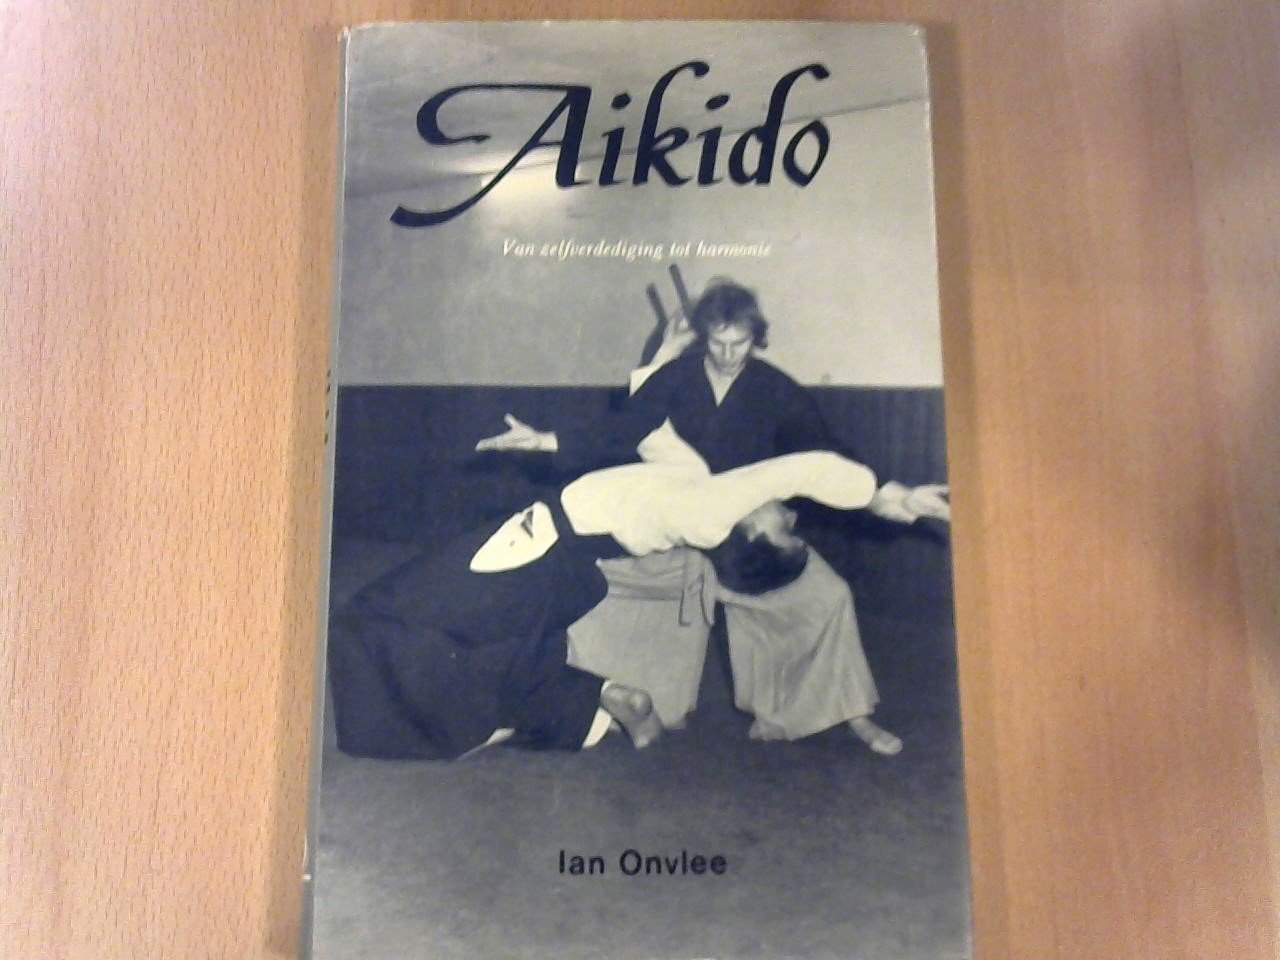 Onvlee Ian - Aikido. Van zelfverdediging tot harmonie